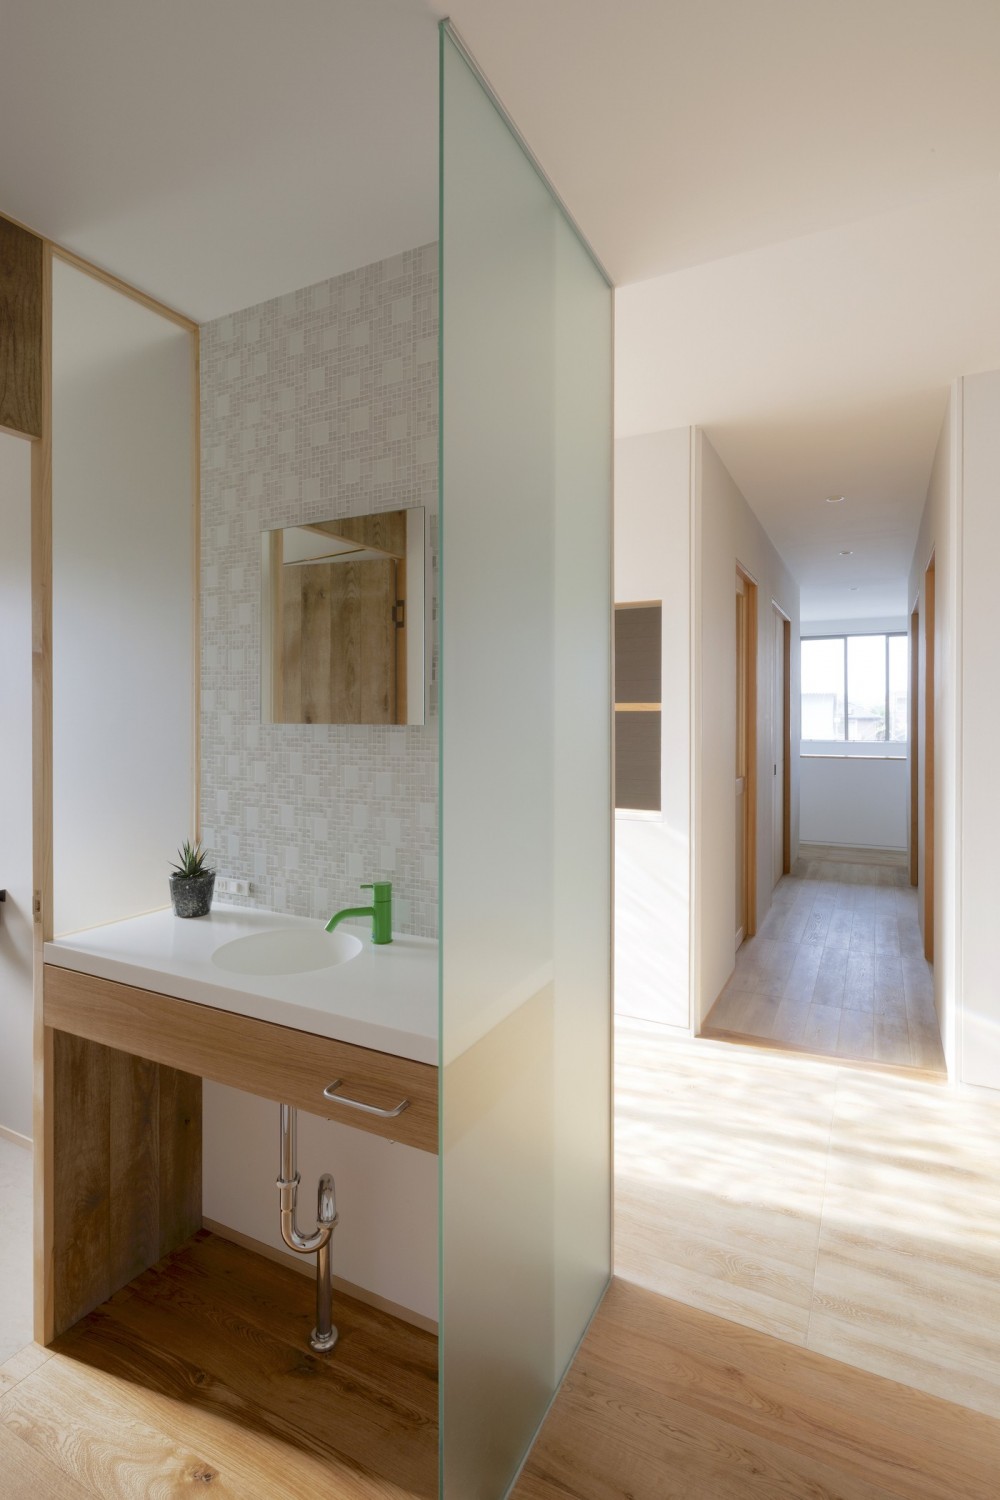 KAI house 〜 時をつなぐ住まい 〜 2世帯住宅へリノベーション (廊下に面した手洗いコーナー)